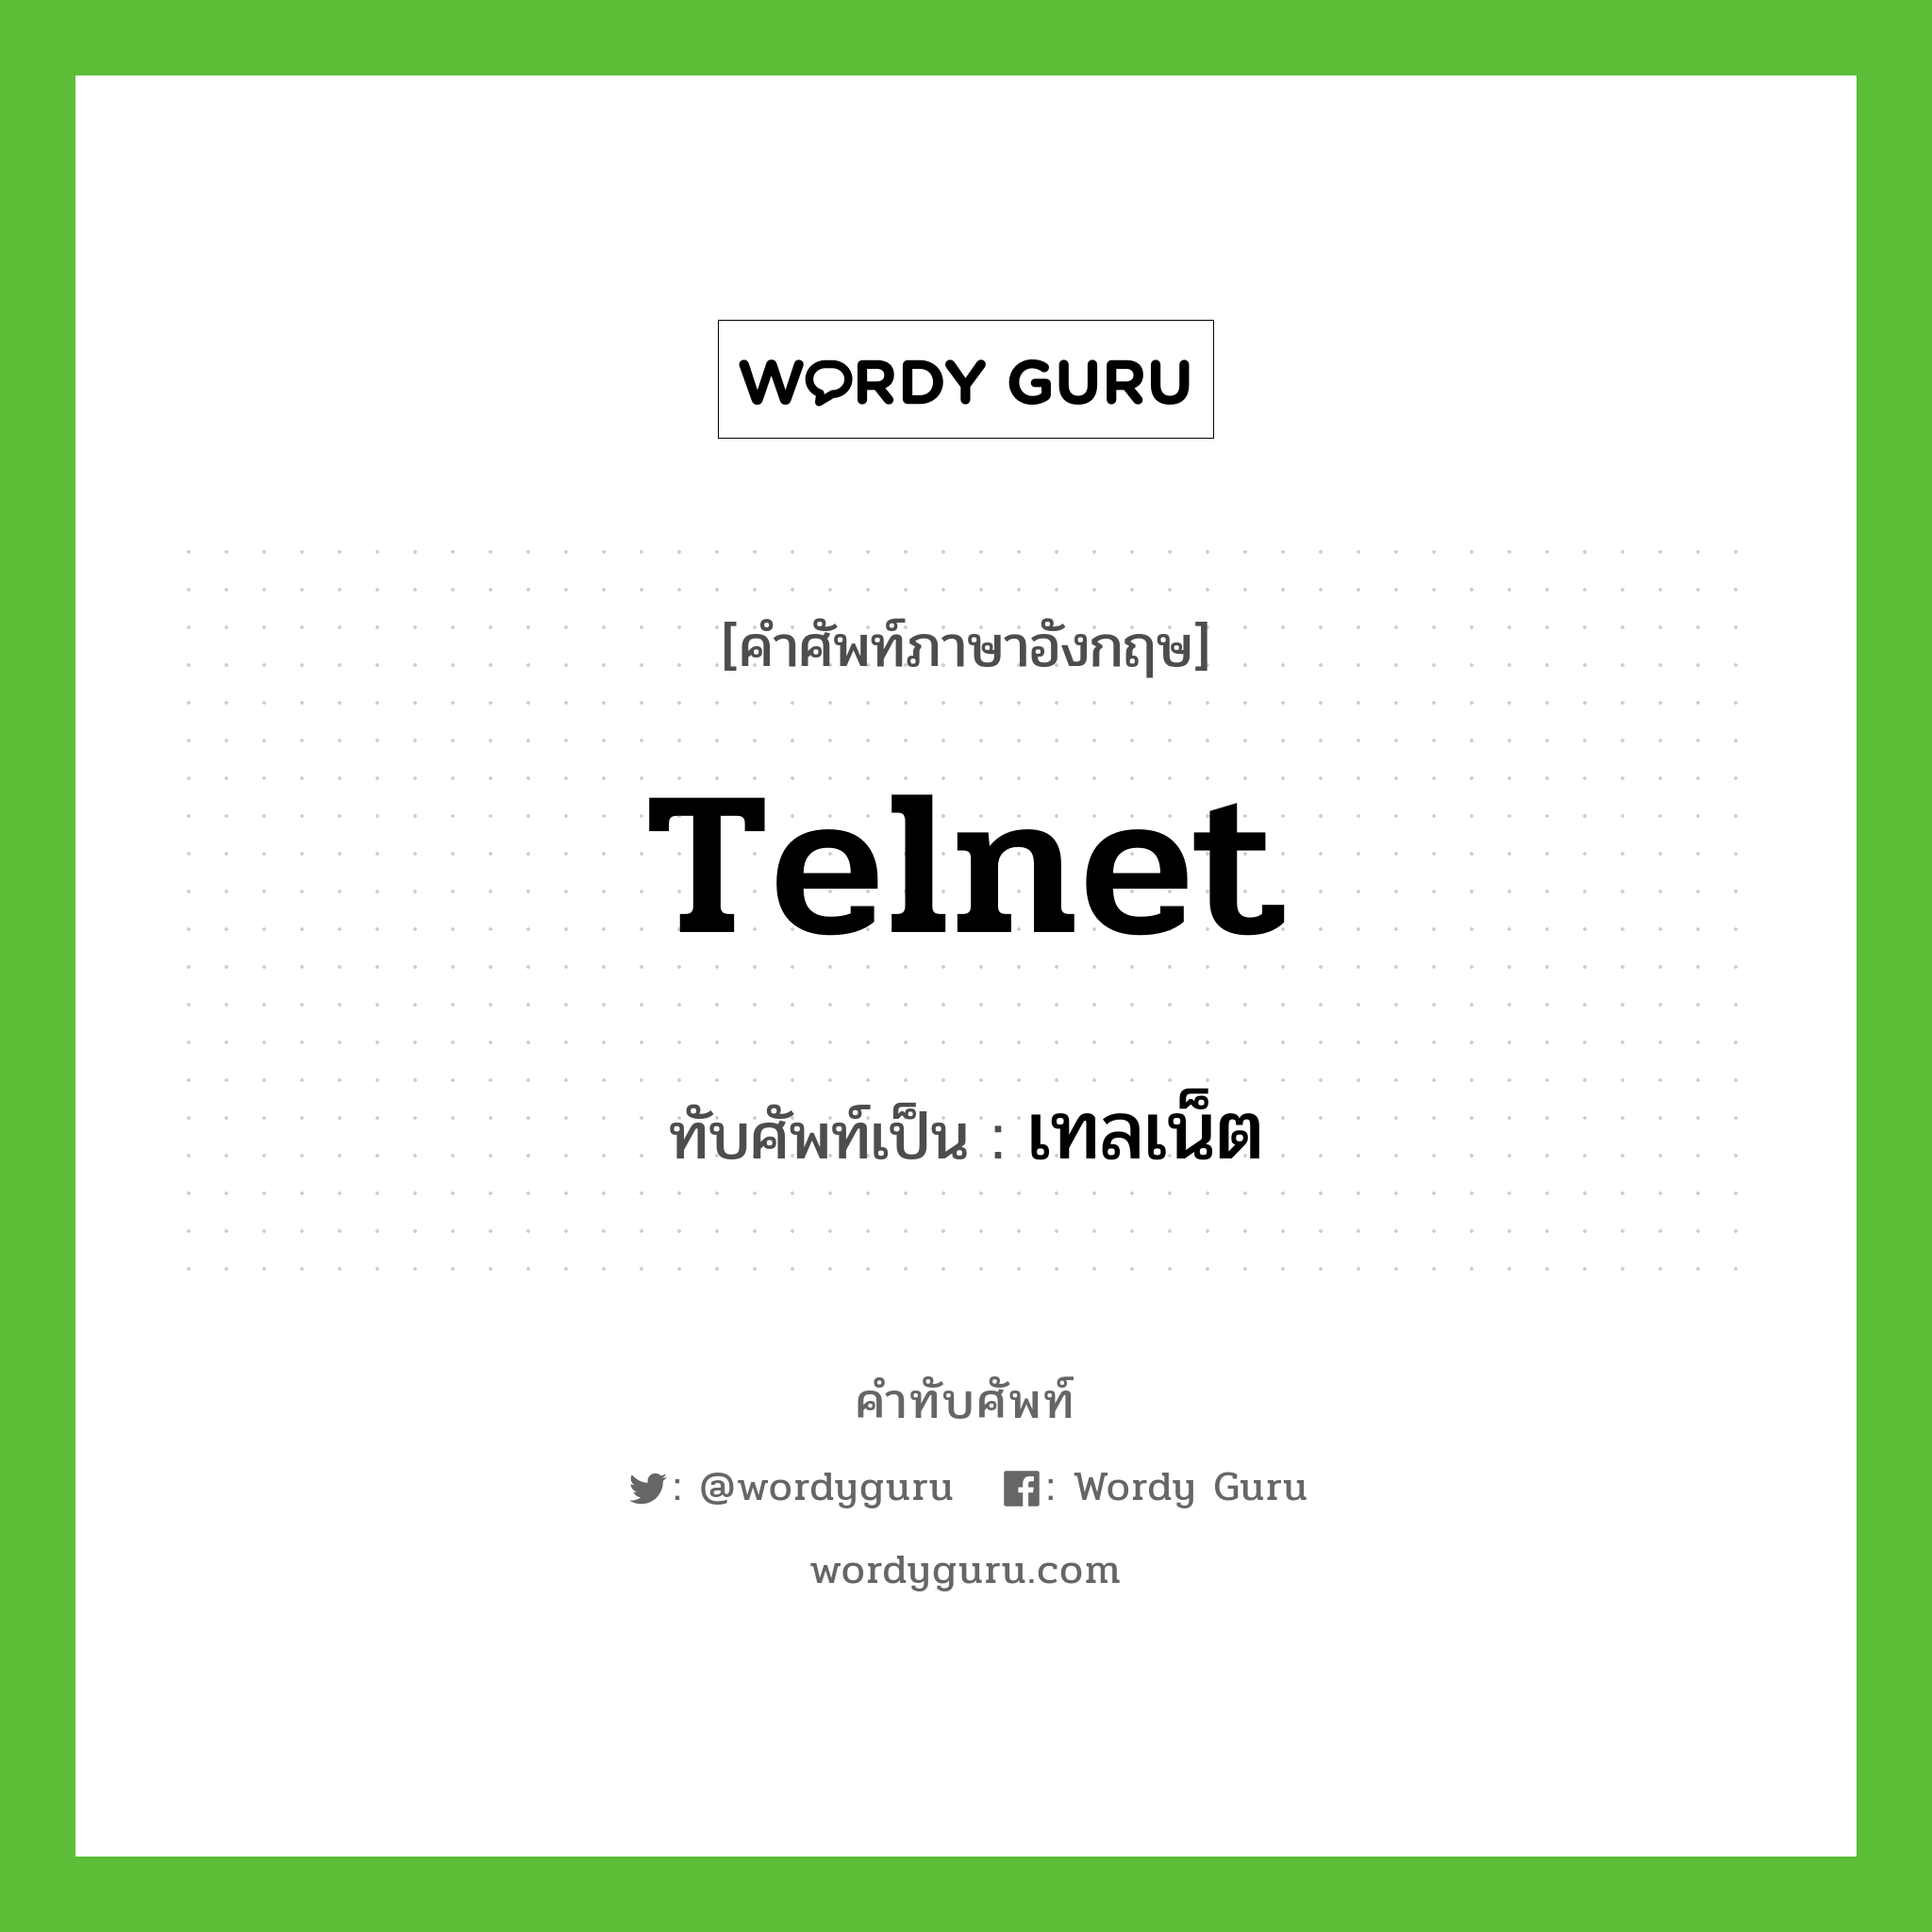 Telnet เขียนเป็นคำไทยว่าอะไร?, คำศัพท์ภาษาอังกฤษ Telnet ทับศัพท์เป็น เทลเน็ต